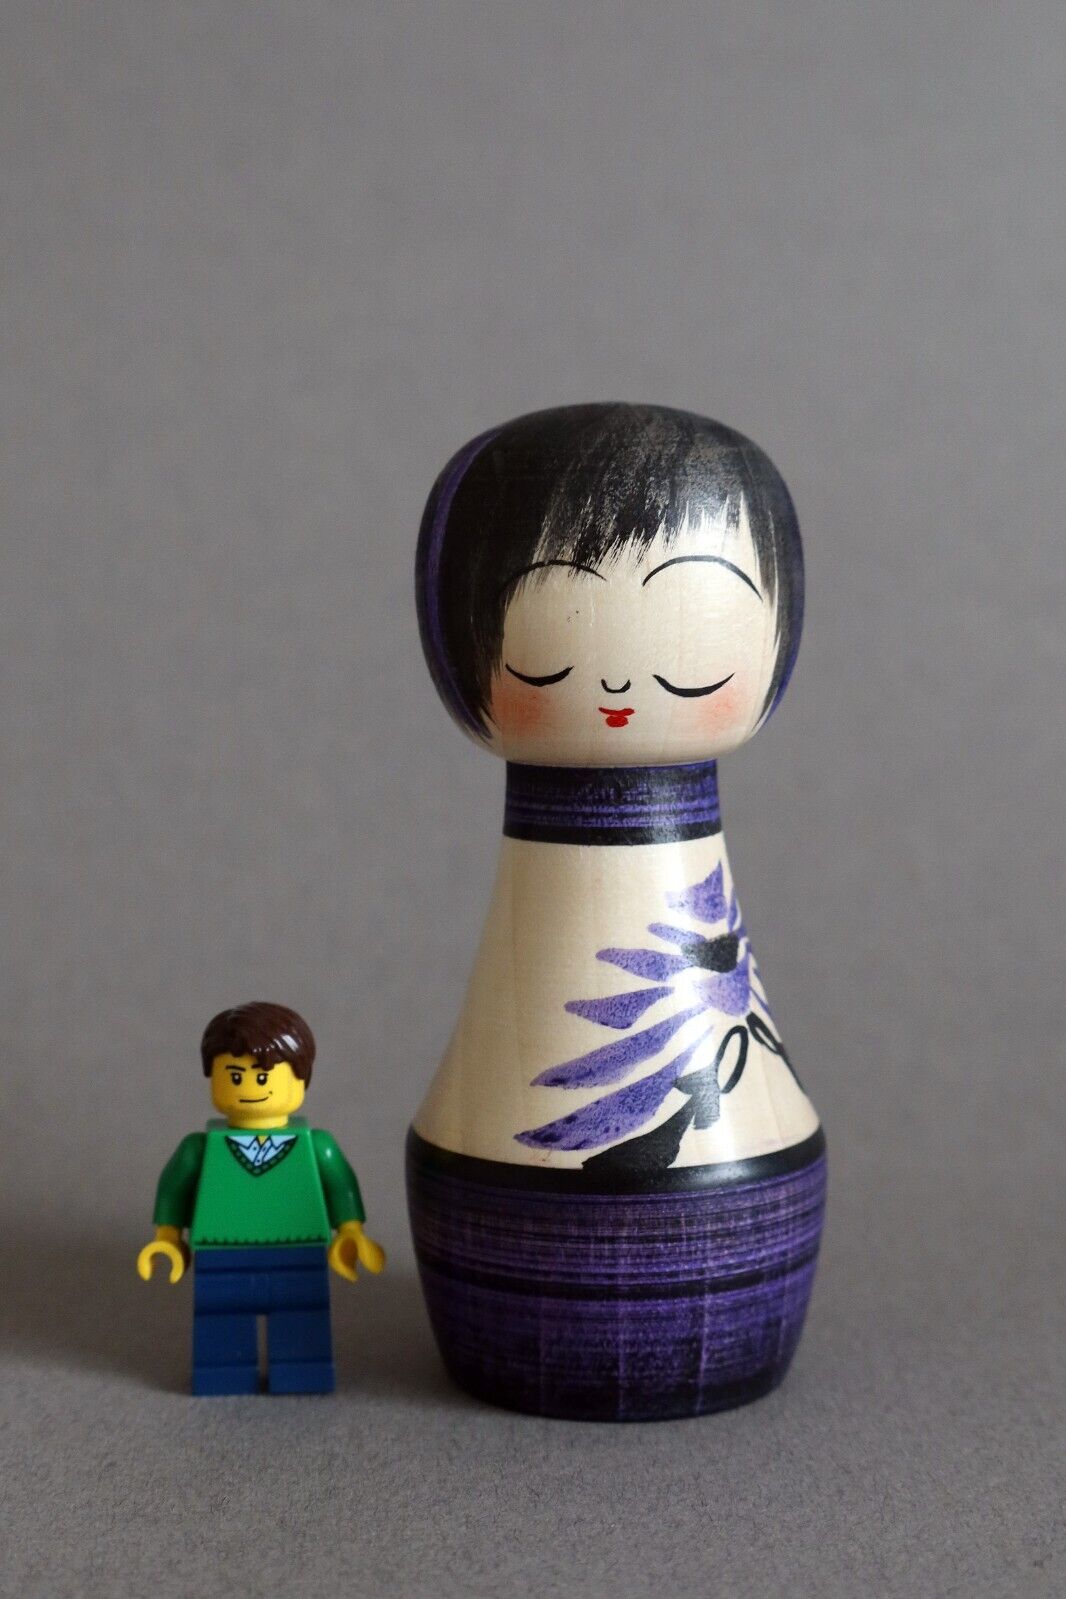 Japanese Kokeshi wood doll Togatta style by Rika Komatsu - purple